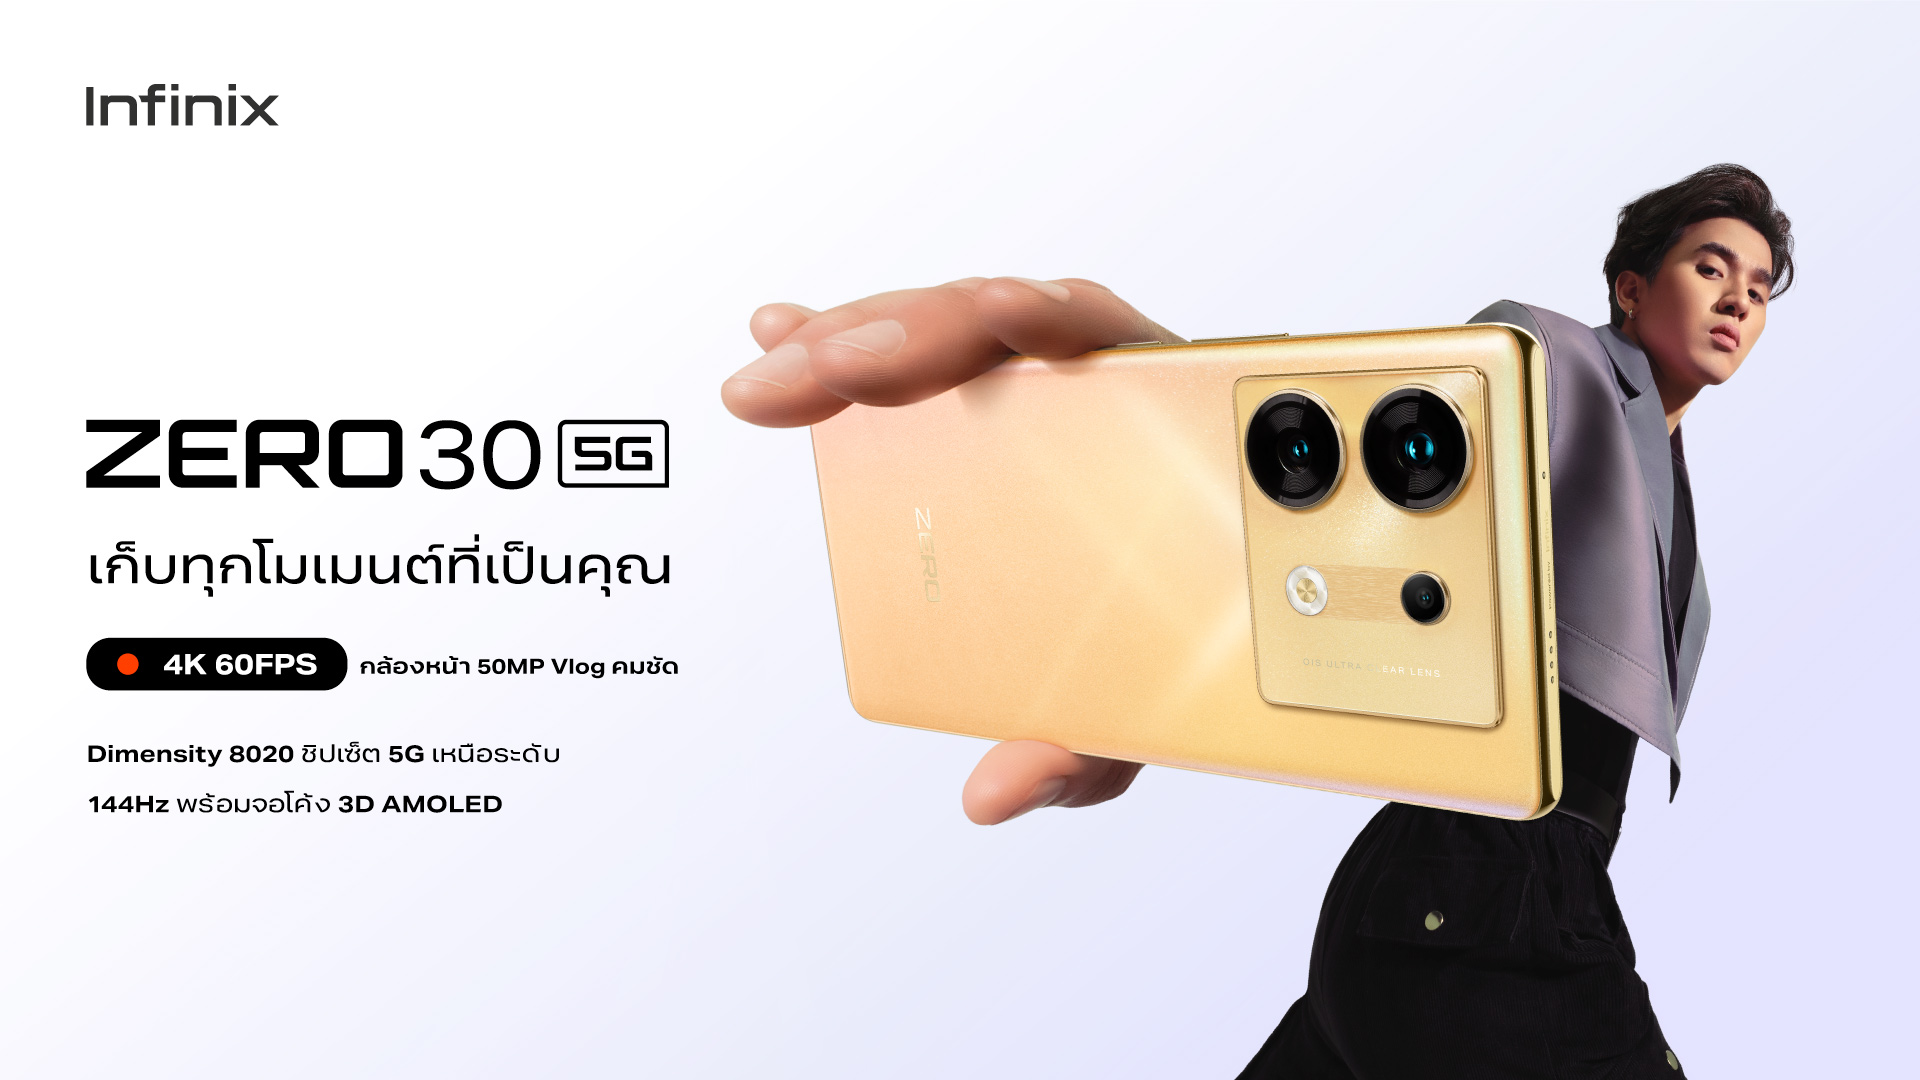 Infinix เตรียมเปิดตัว ZERO 30 5G ในประเทศไทย ในเรทราคาไม่เกิน 12,000 บาท  ชูจุดขายกล้องหน้า 4K รุ่นแรกในตลาดราคากลาง พร้อมขาย 14 กันยายนนี้!